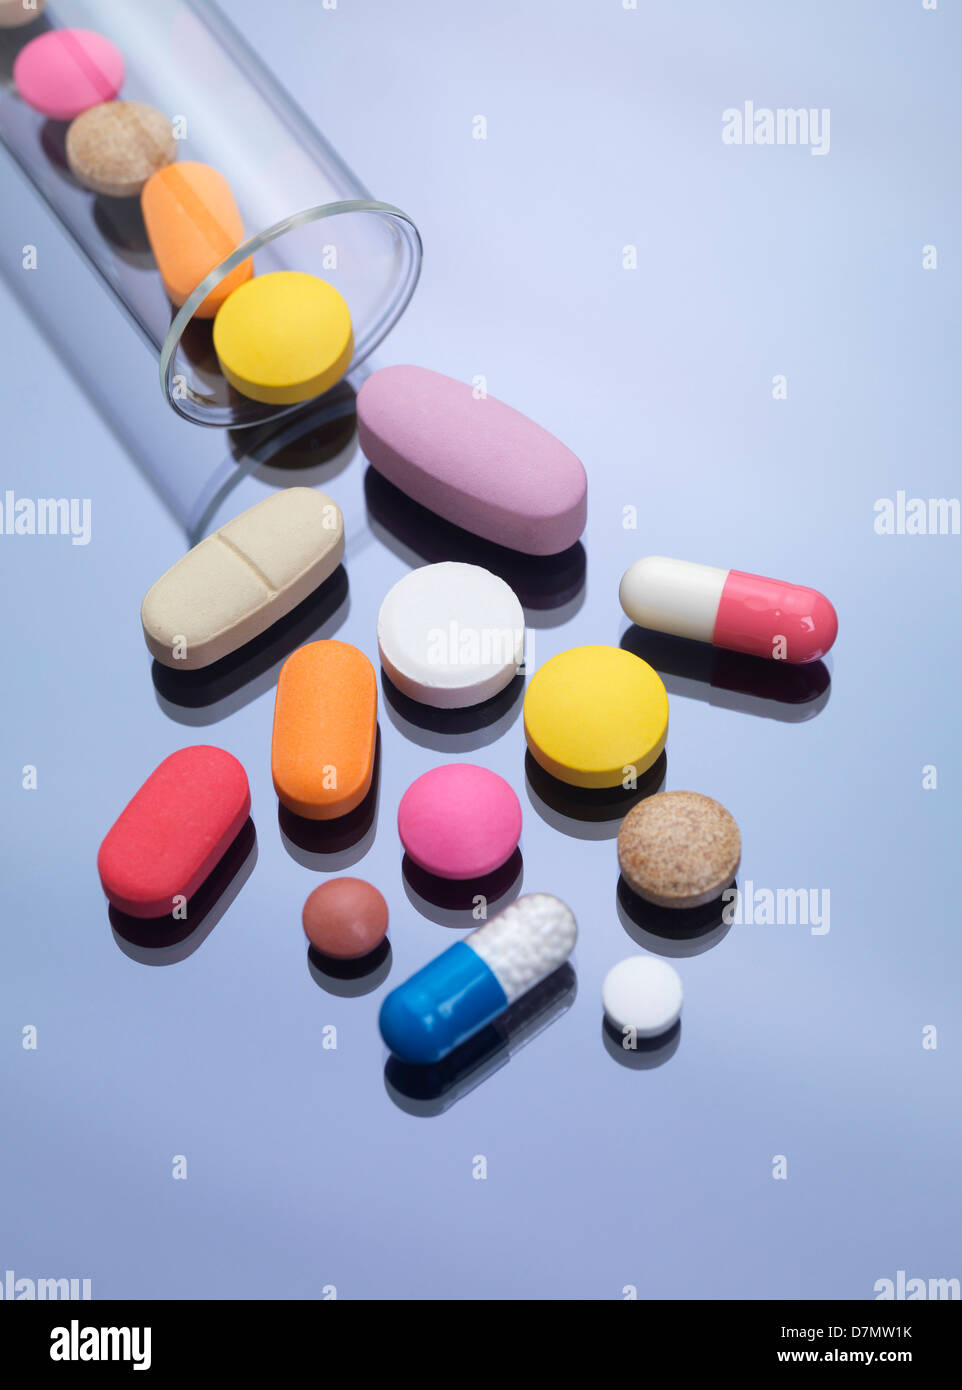 La recherche pharmaceutique, conceptual image Banque D'Images